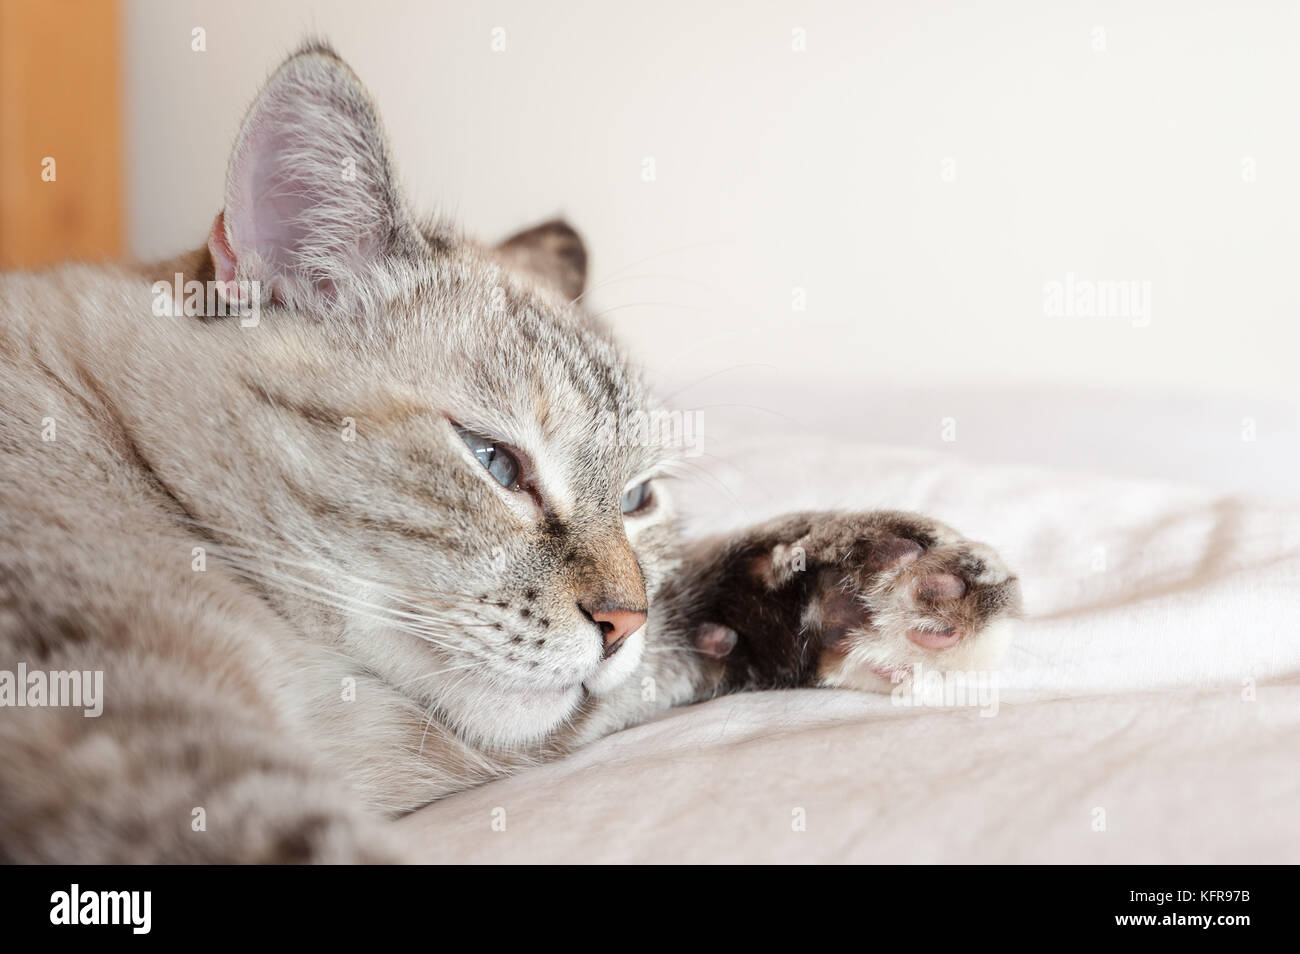 Ritratto di tabby cat su brown plaid. unione cat. Foto Stock